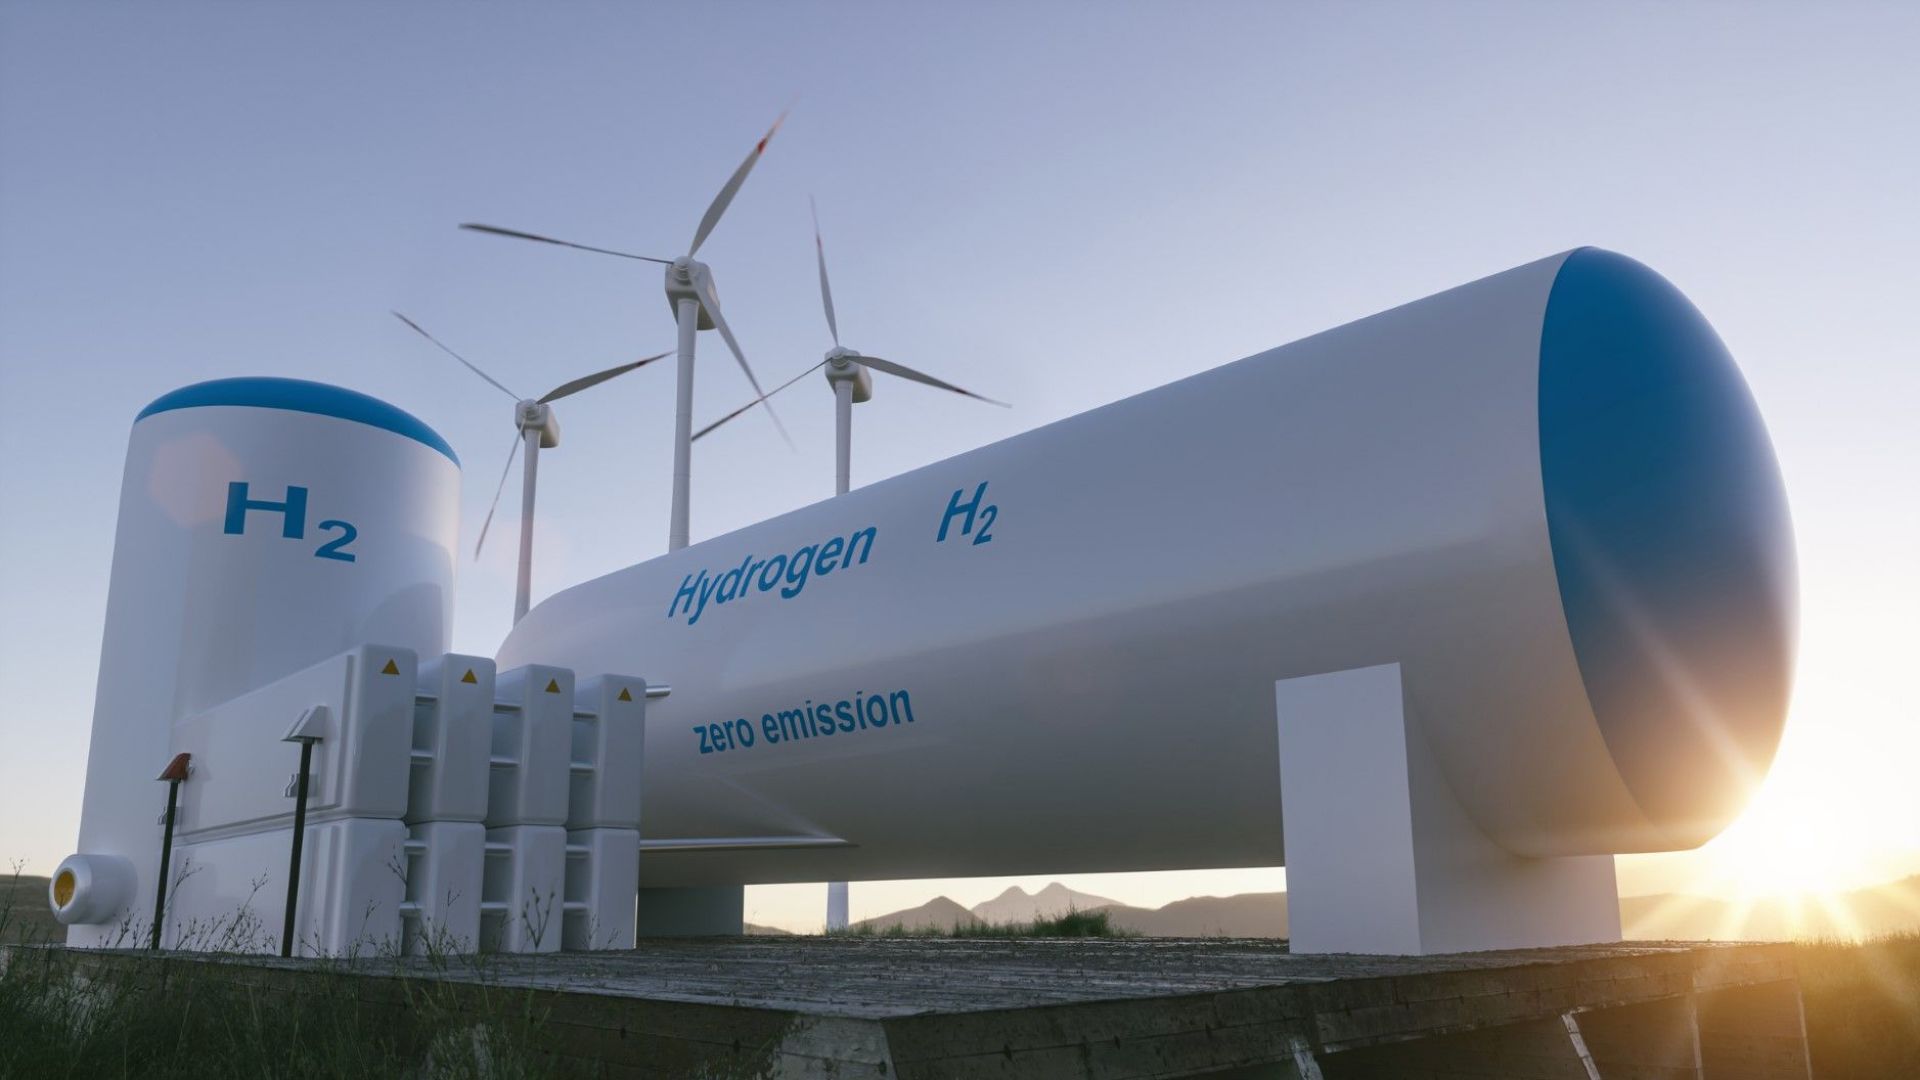 Зеленият водород може да стане лидер в енергийния сектор